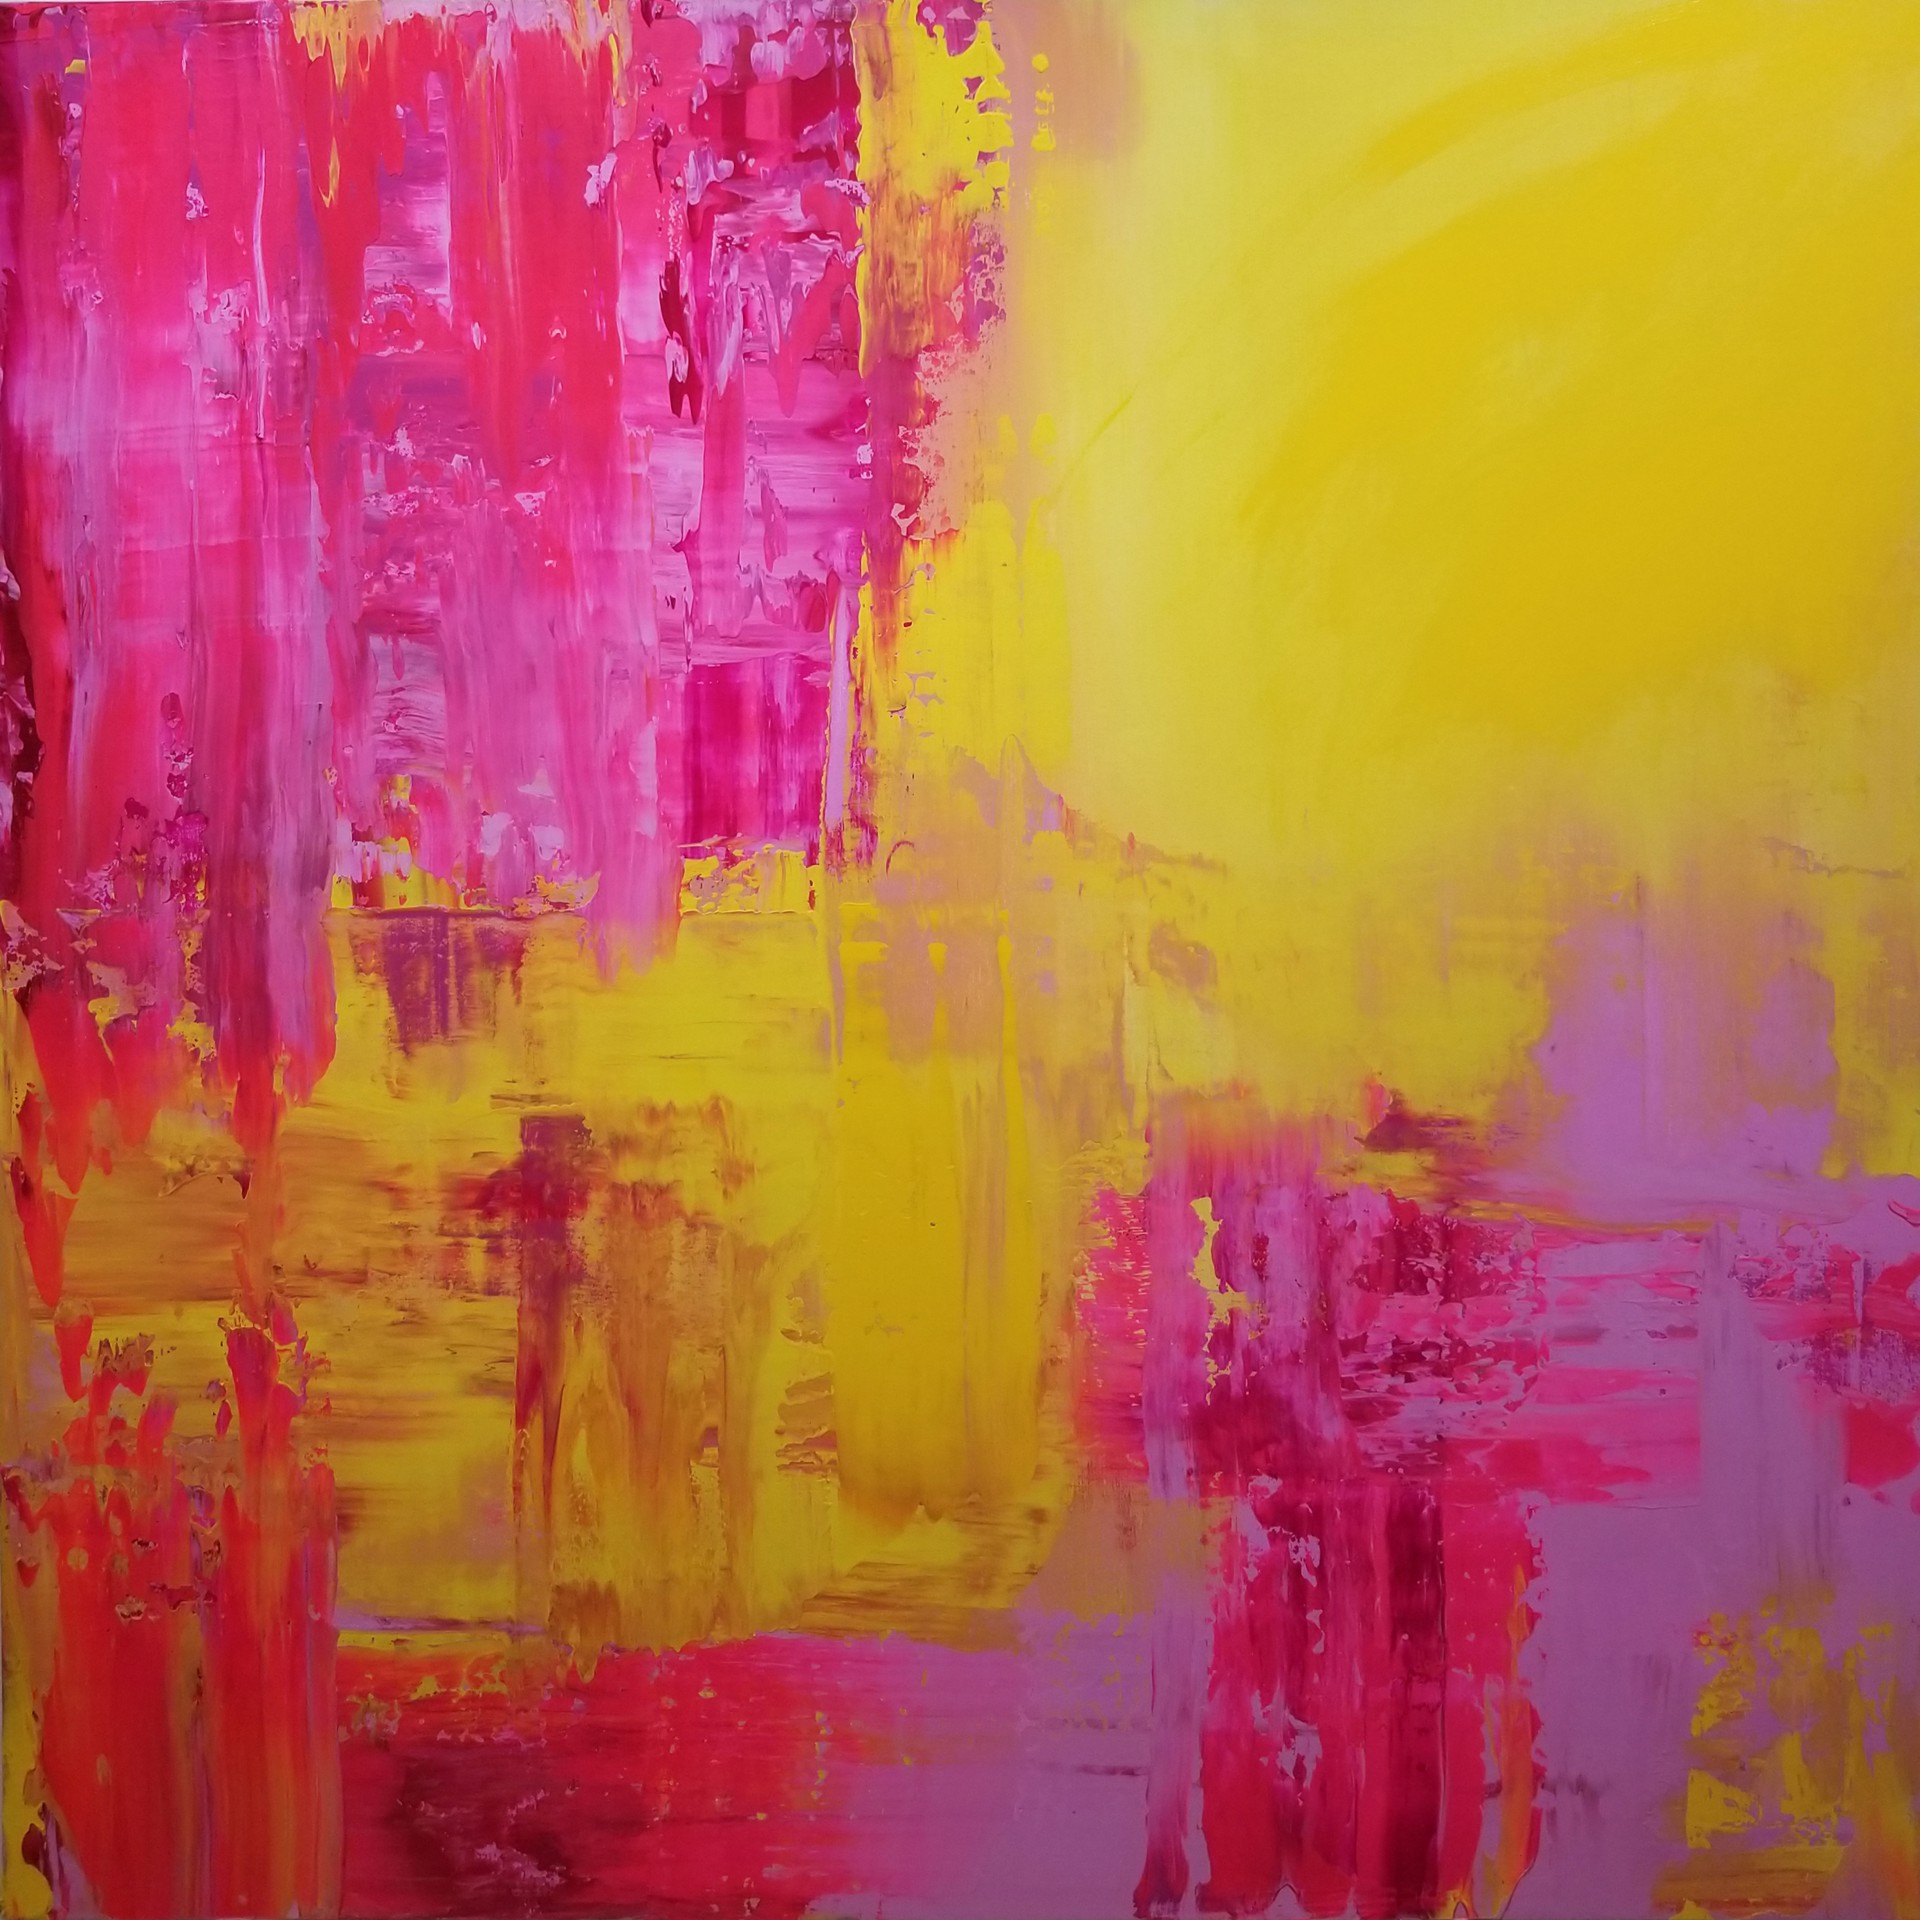 Pink Lemonade by Amy Nelder